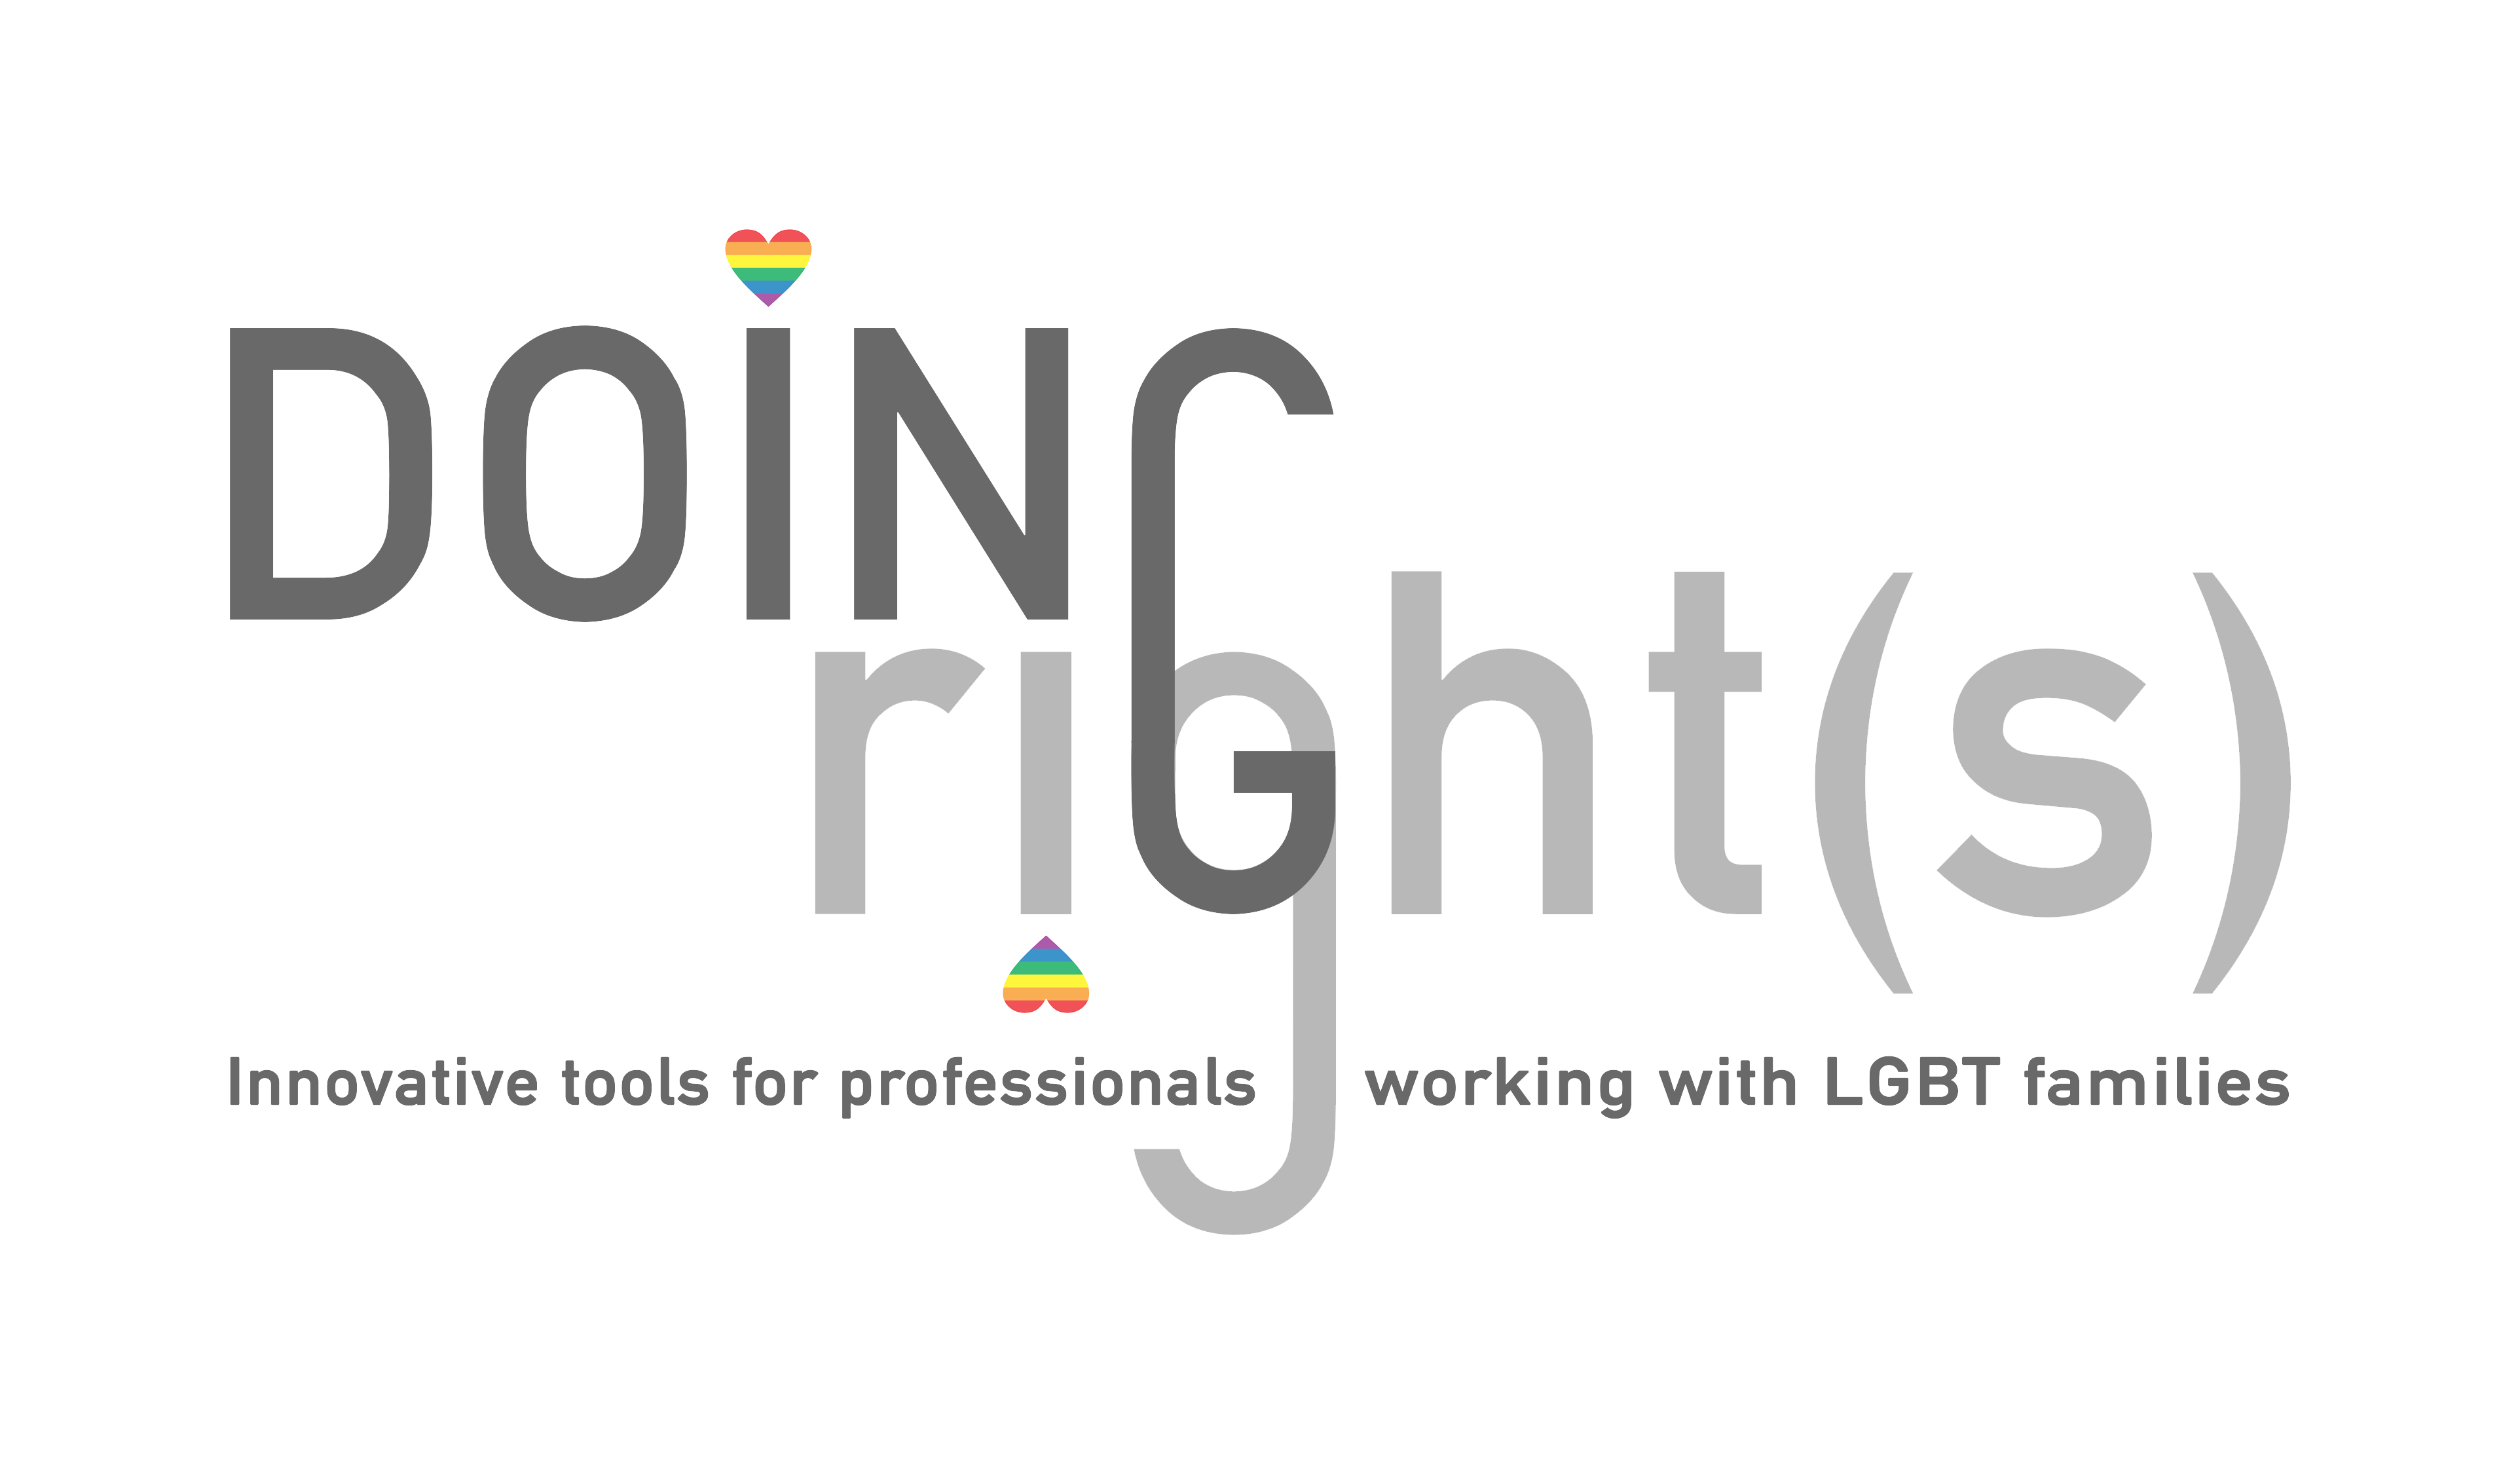 doing_rights_logo fondo trasparente.png